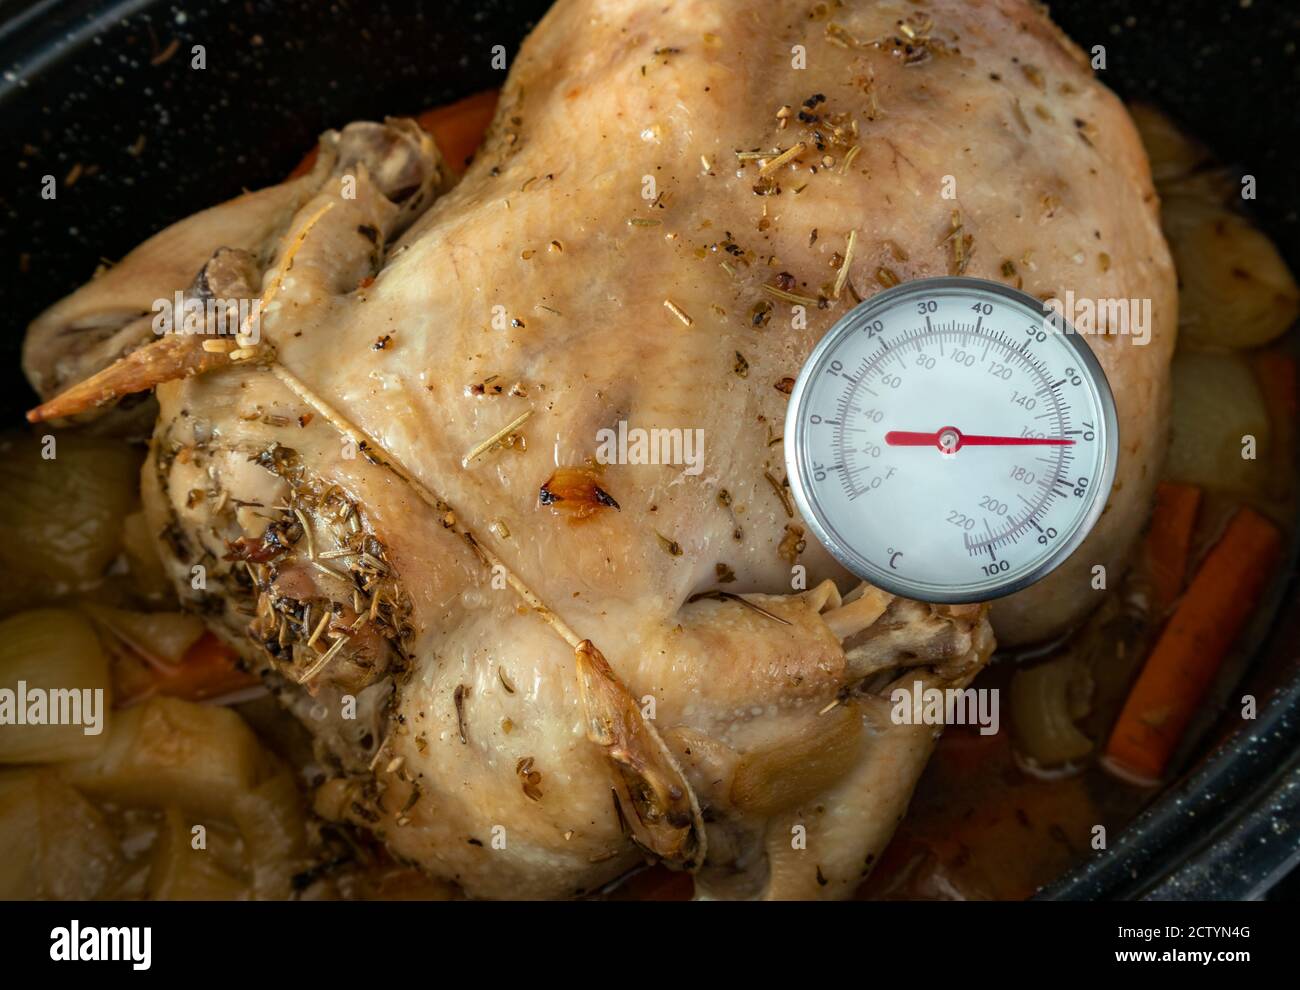 Mesure de la température interne du poulet cuit au four. Thermomètre à  viande / lecture instantanée pour mesurer la température des aliments.  Poulet entier dans une casserole noire Photo Stock - Alamy